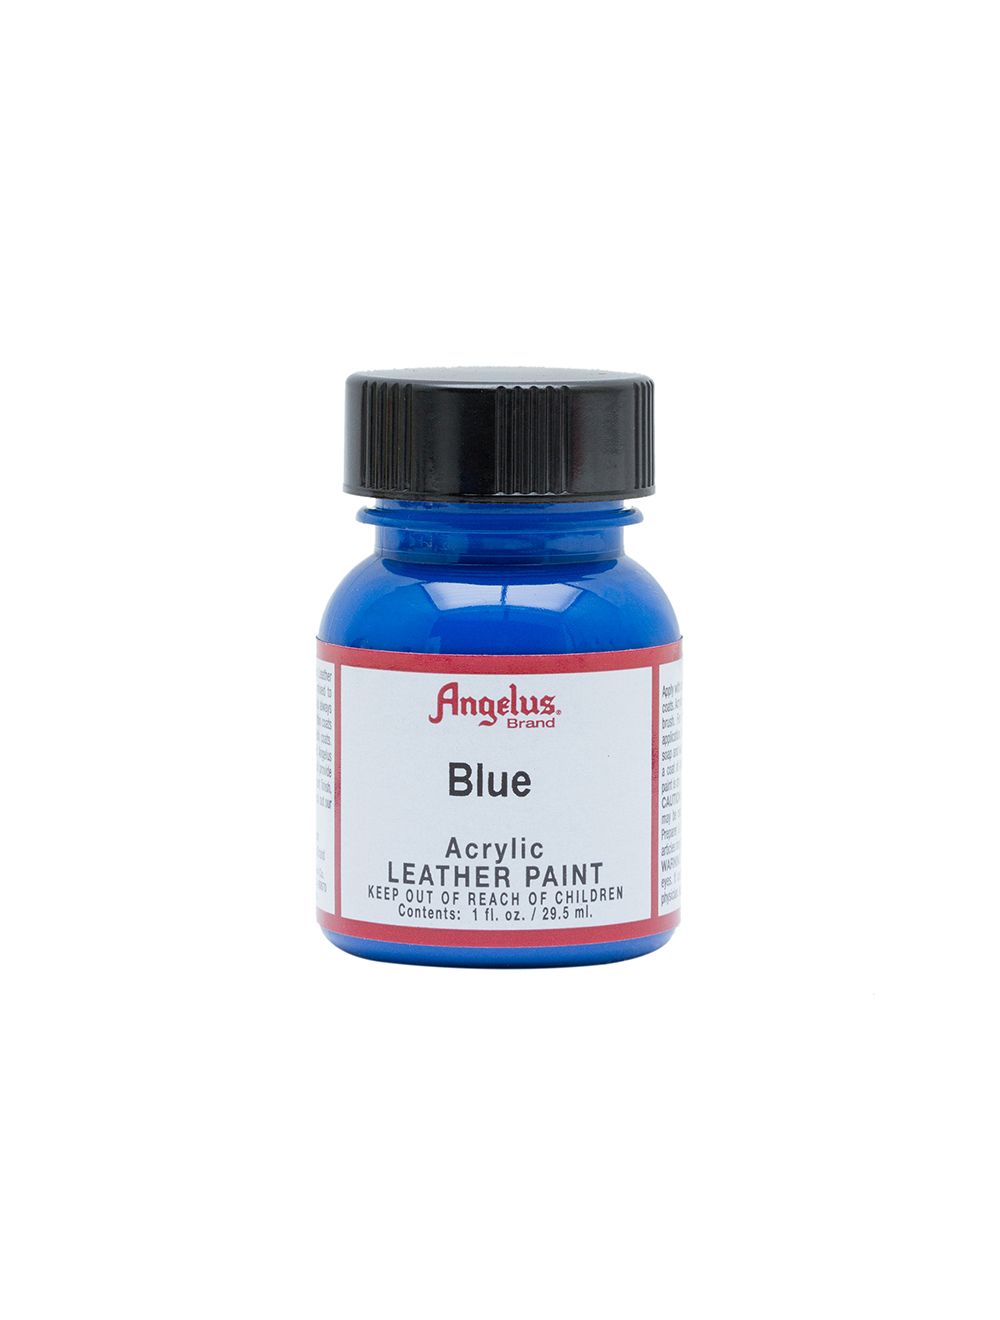 Angelus Acrylic Leather Paint - Blue, 1 oz